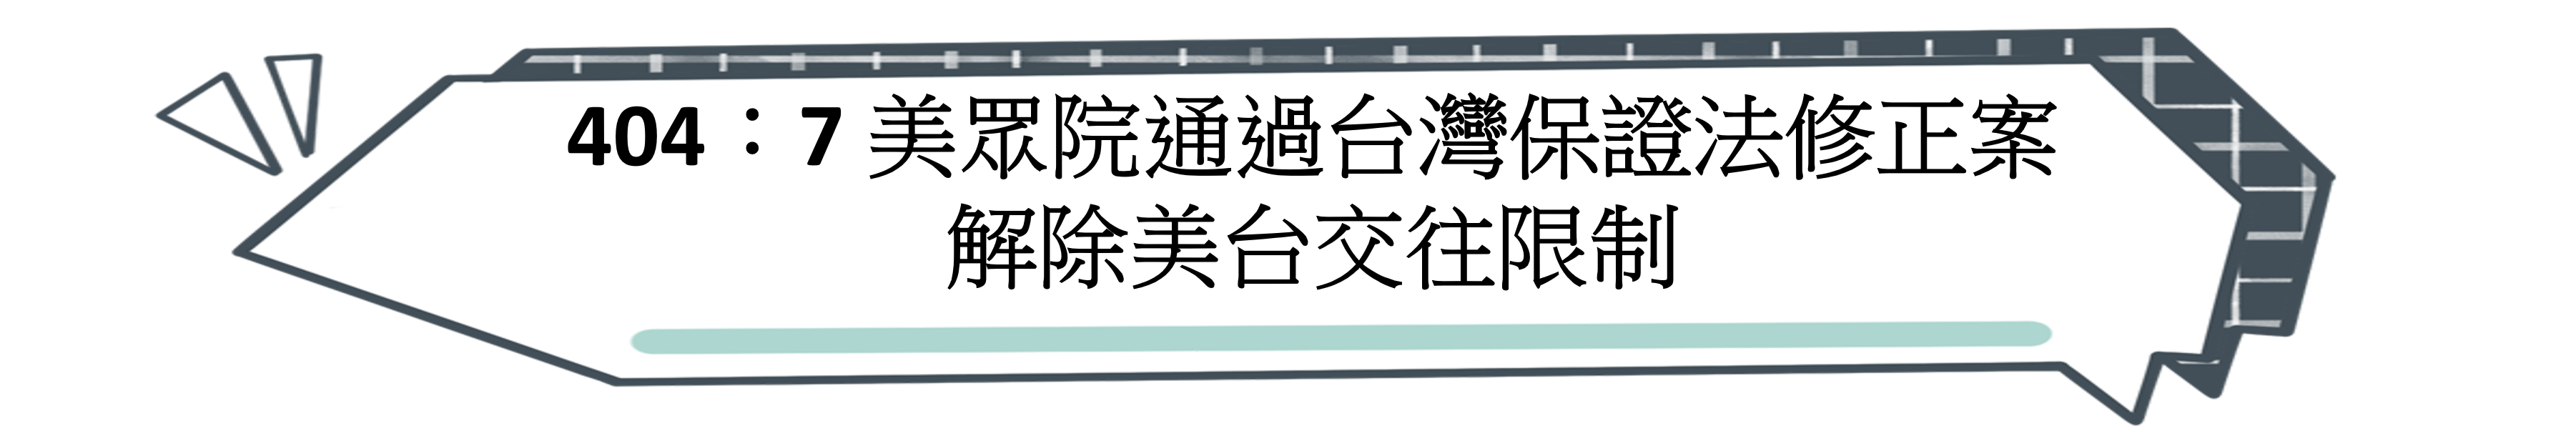 404：7 美眾院通過台灣保證法修正案 解除美台交往限制